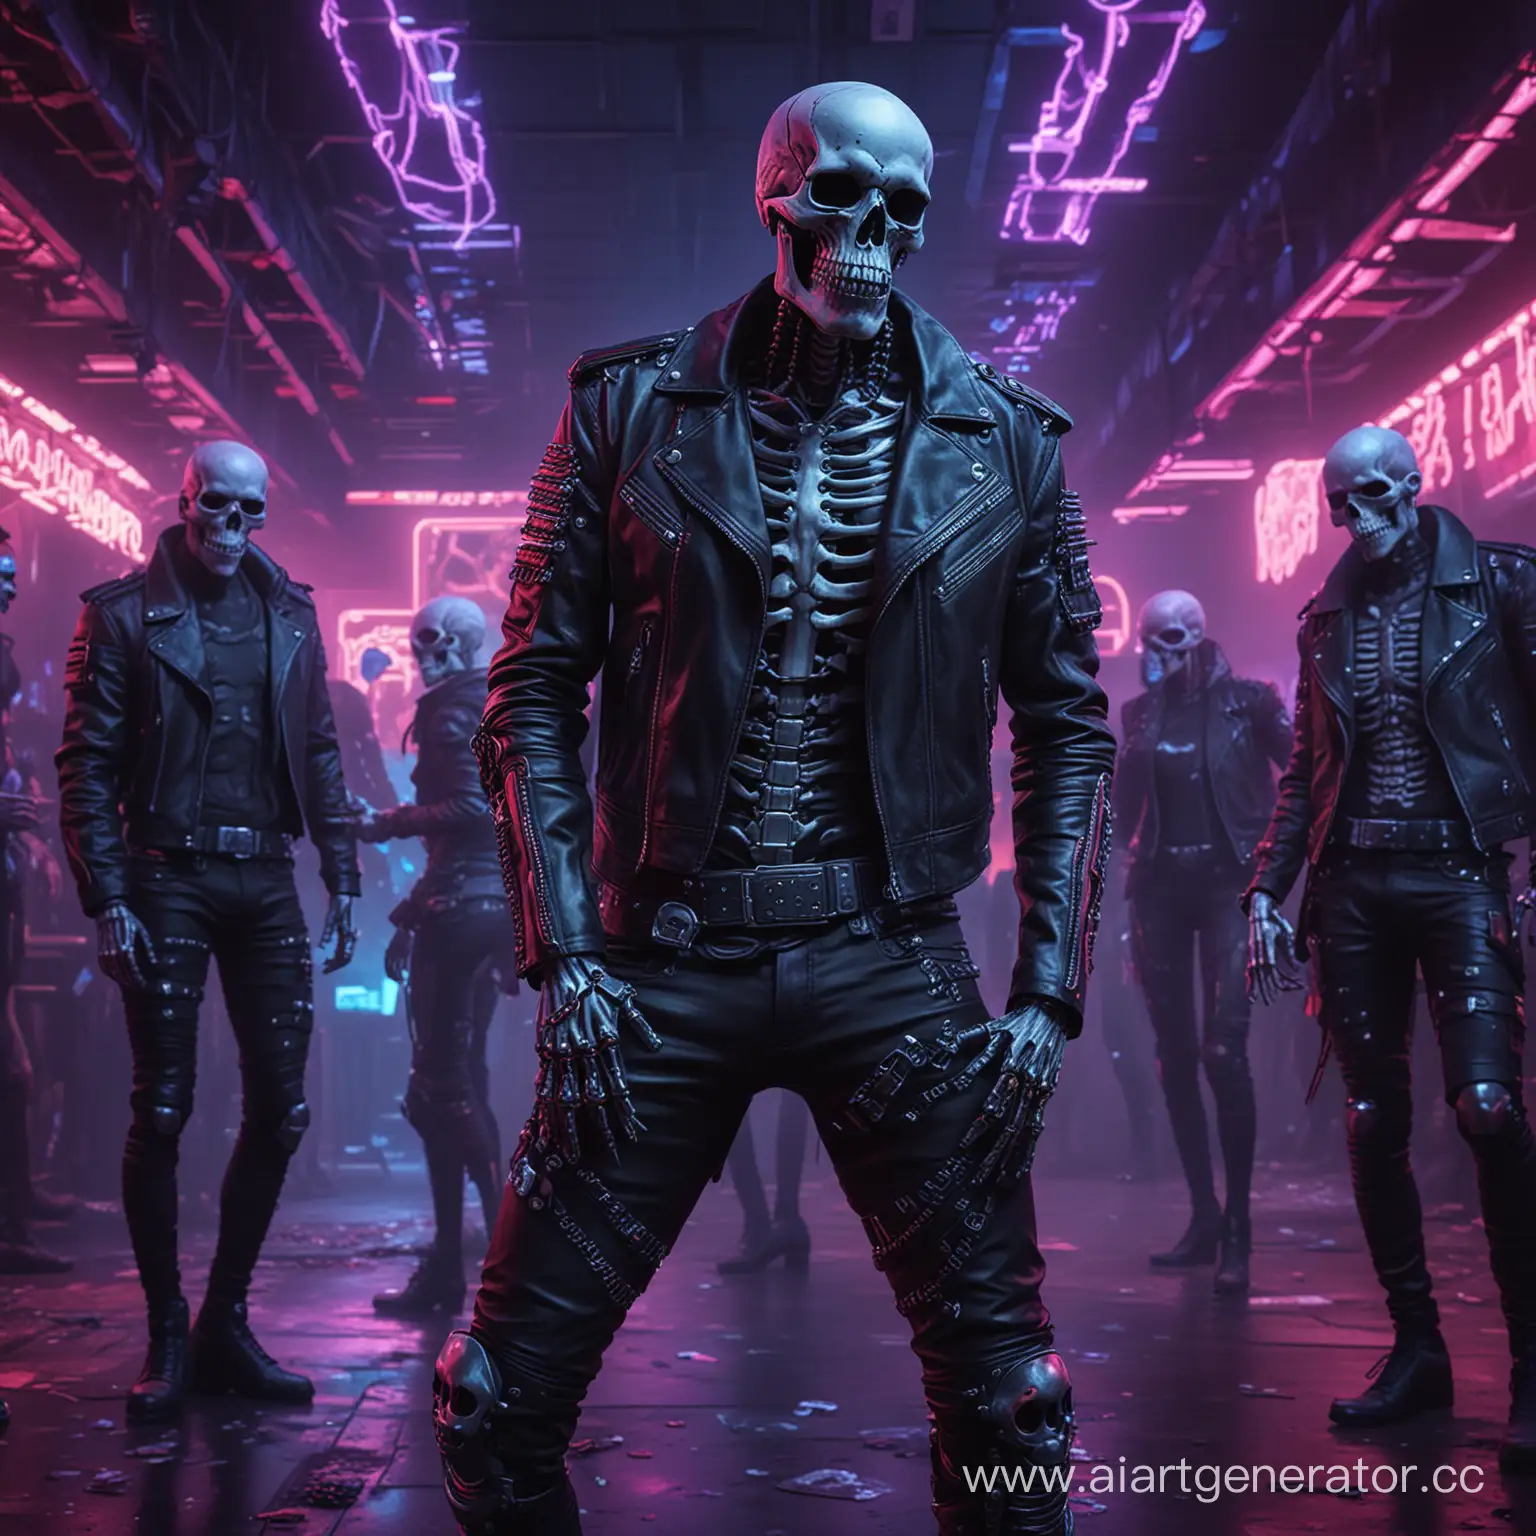 Cyberpunk-Skeletons-Dancing-in-Neon-Club